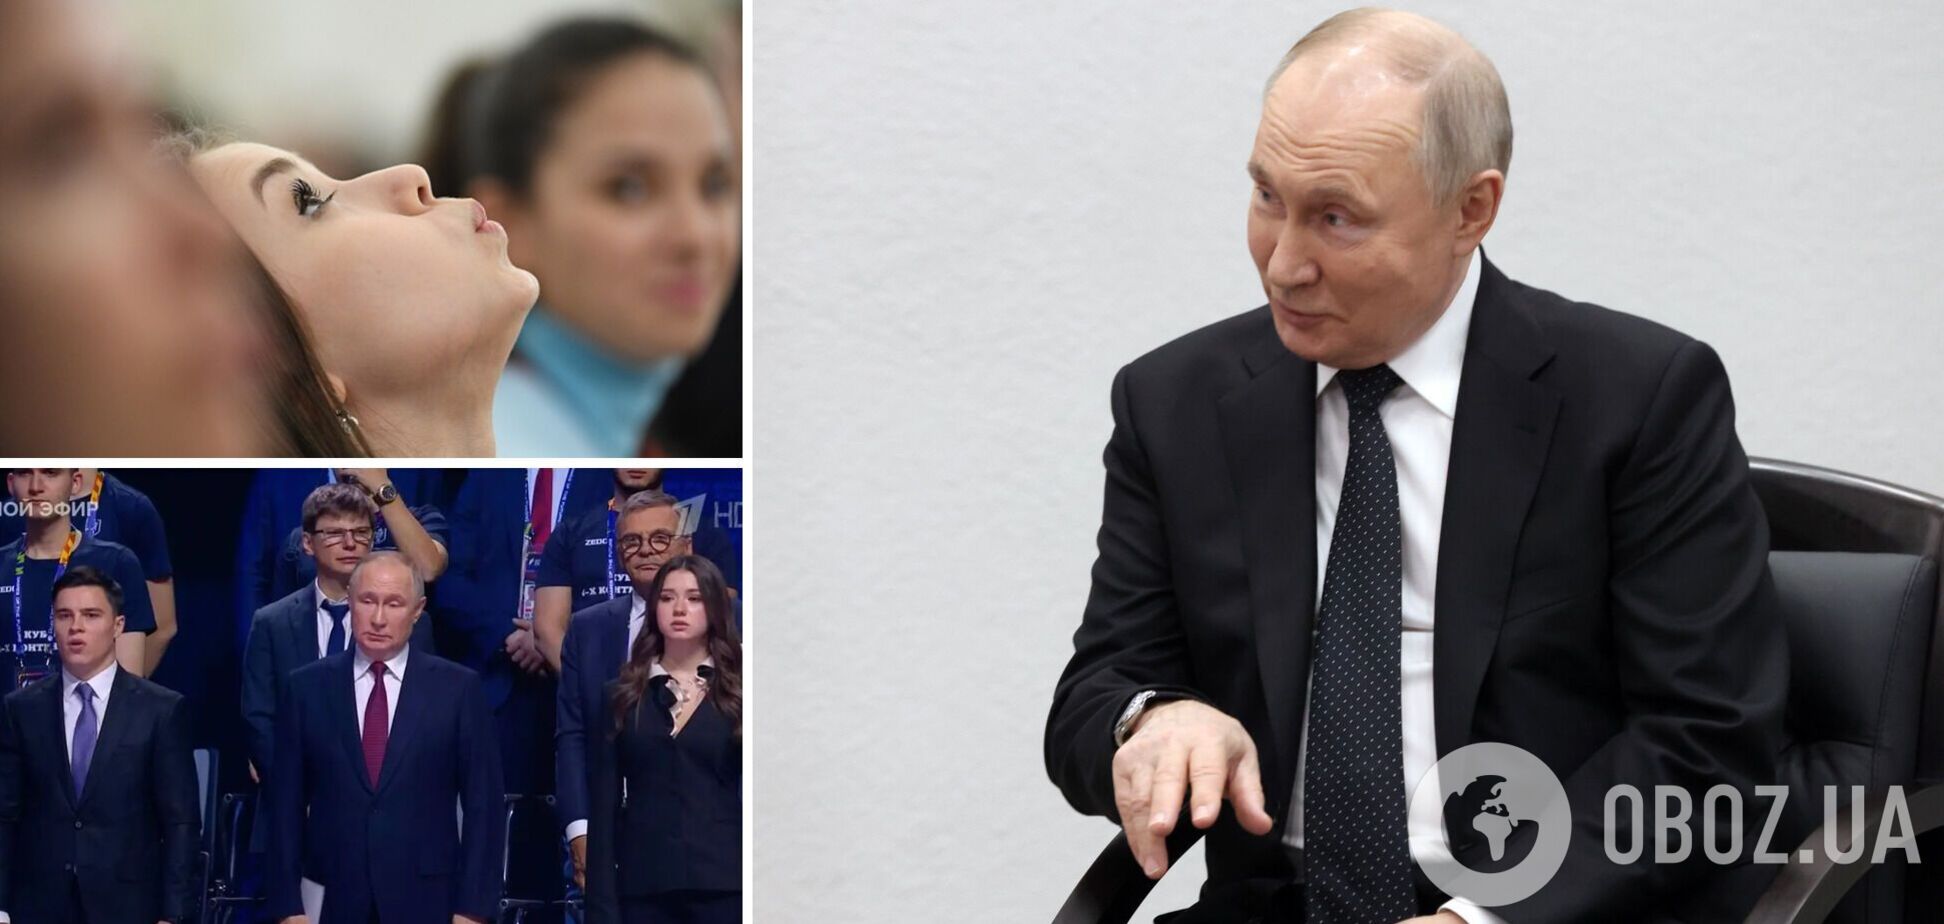 'Заміна Кабаєвій?' Путін з'явився на відкритті турніру вперше зі своєю 'новою коханкою'. Фото